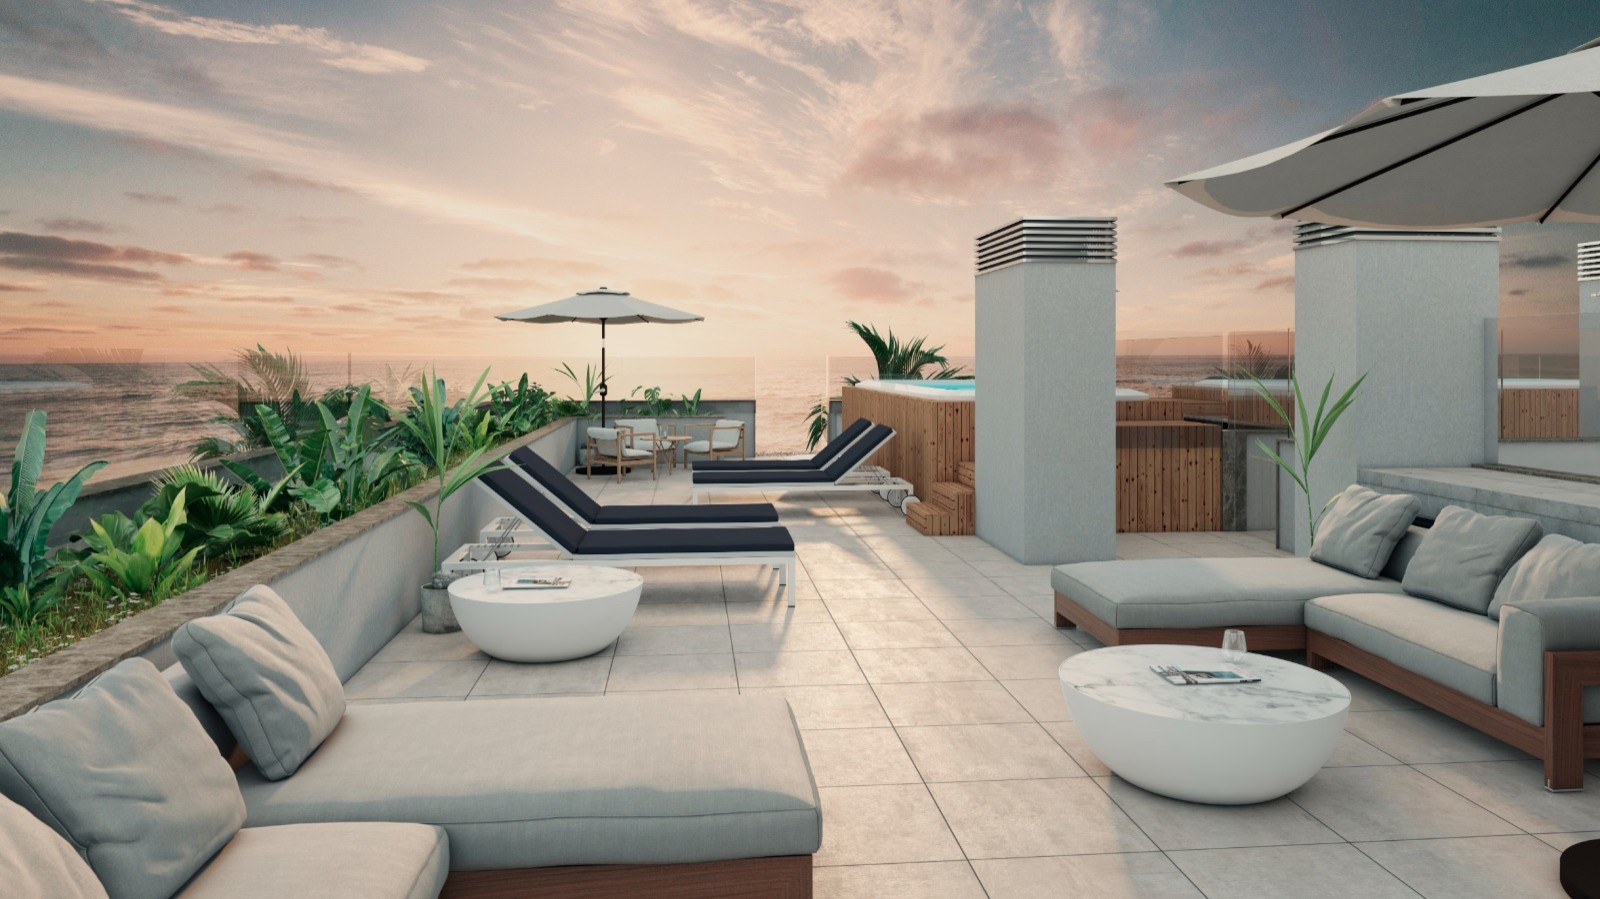 Apartamento T2 com vista de mar, terraço e jacuzzi, para venda, Gaia, Portugal_250247